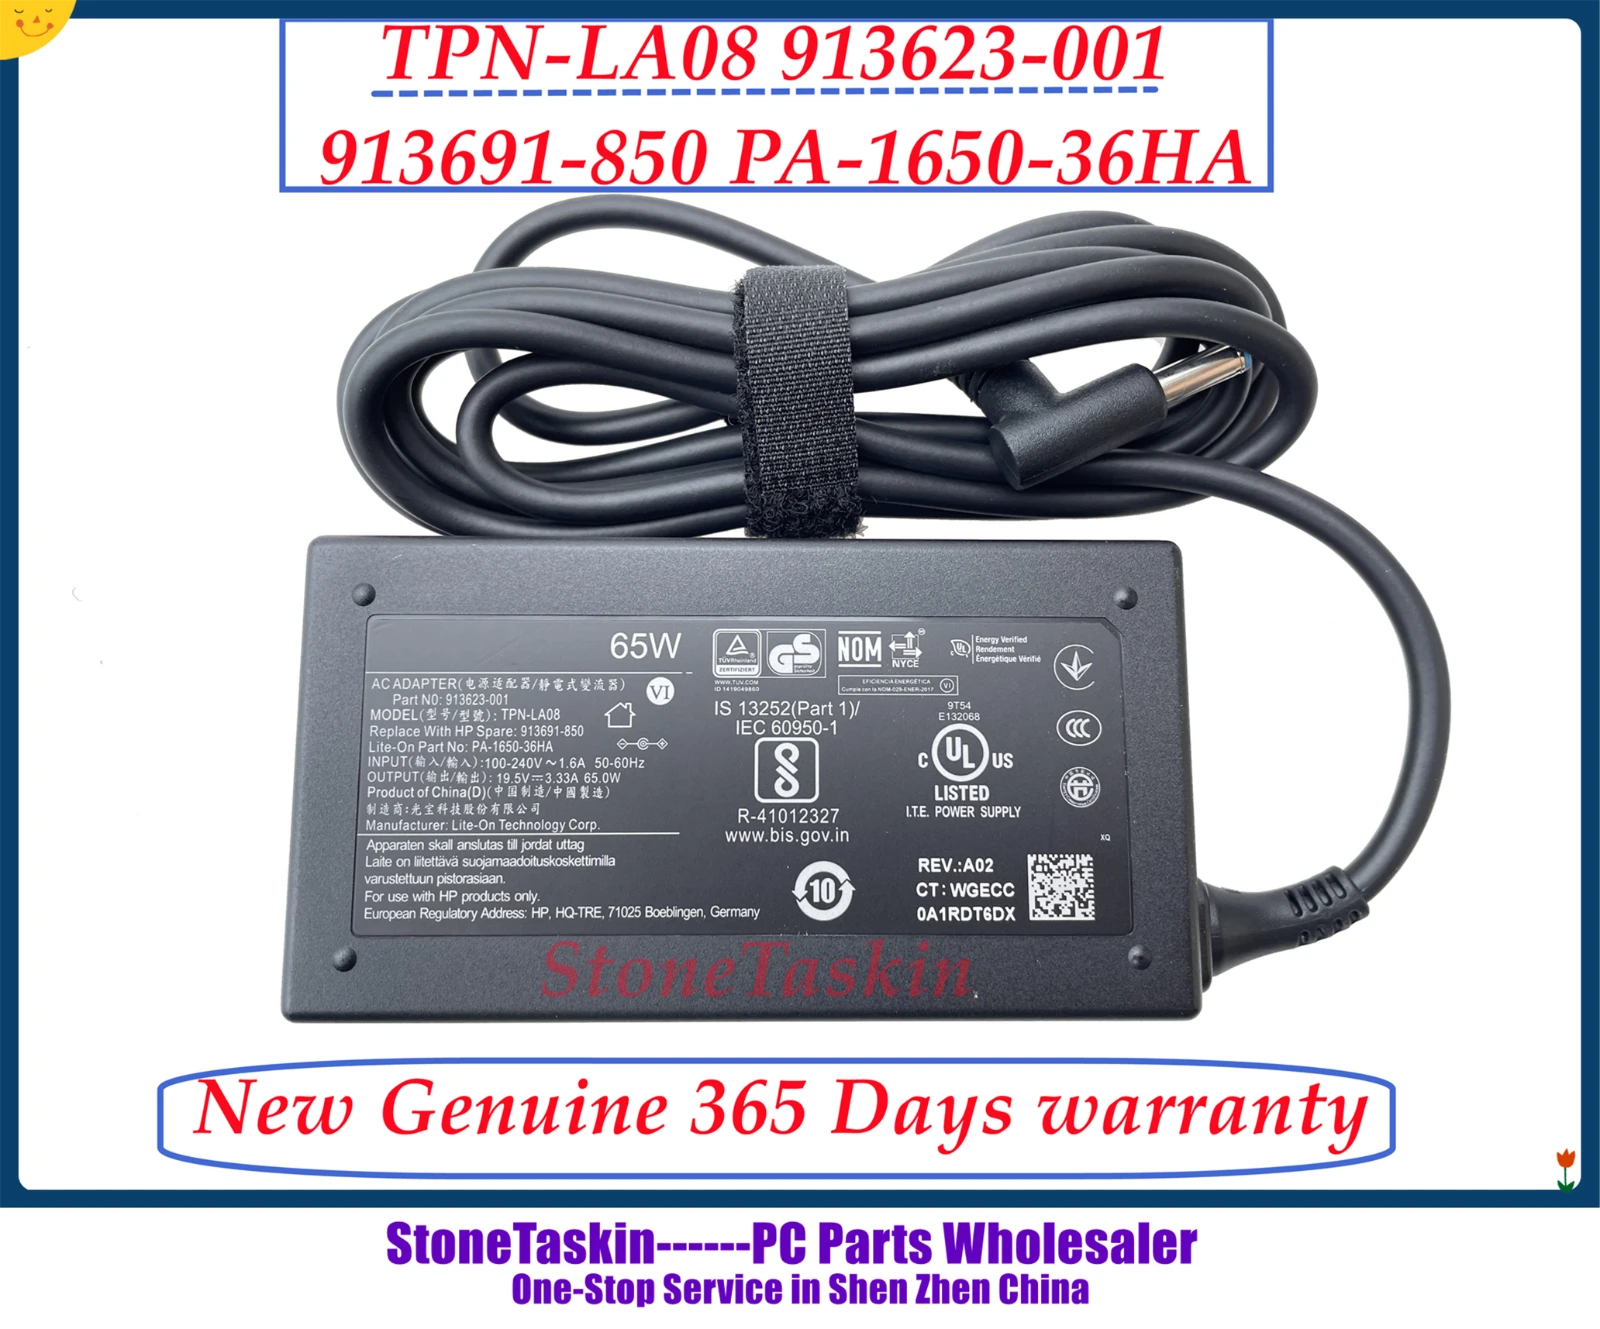 StoneTaskin TPN-LA08 913623-001 913691-850 PA-1650-36HA For HP G